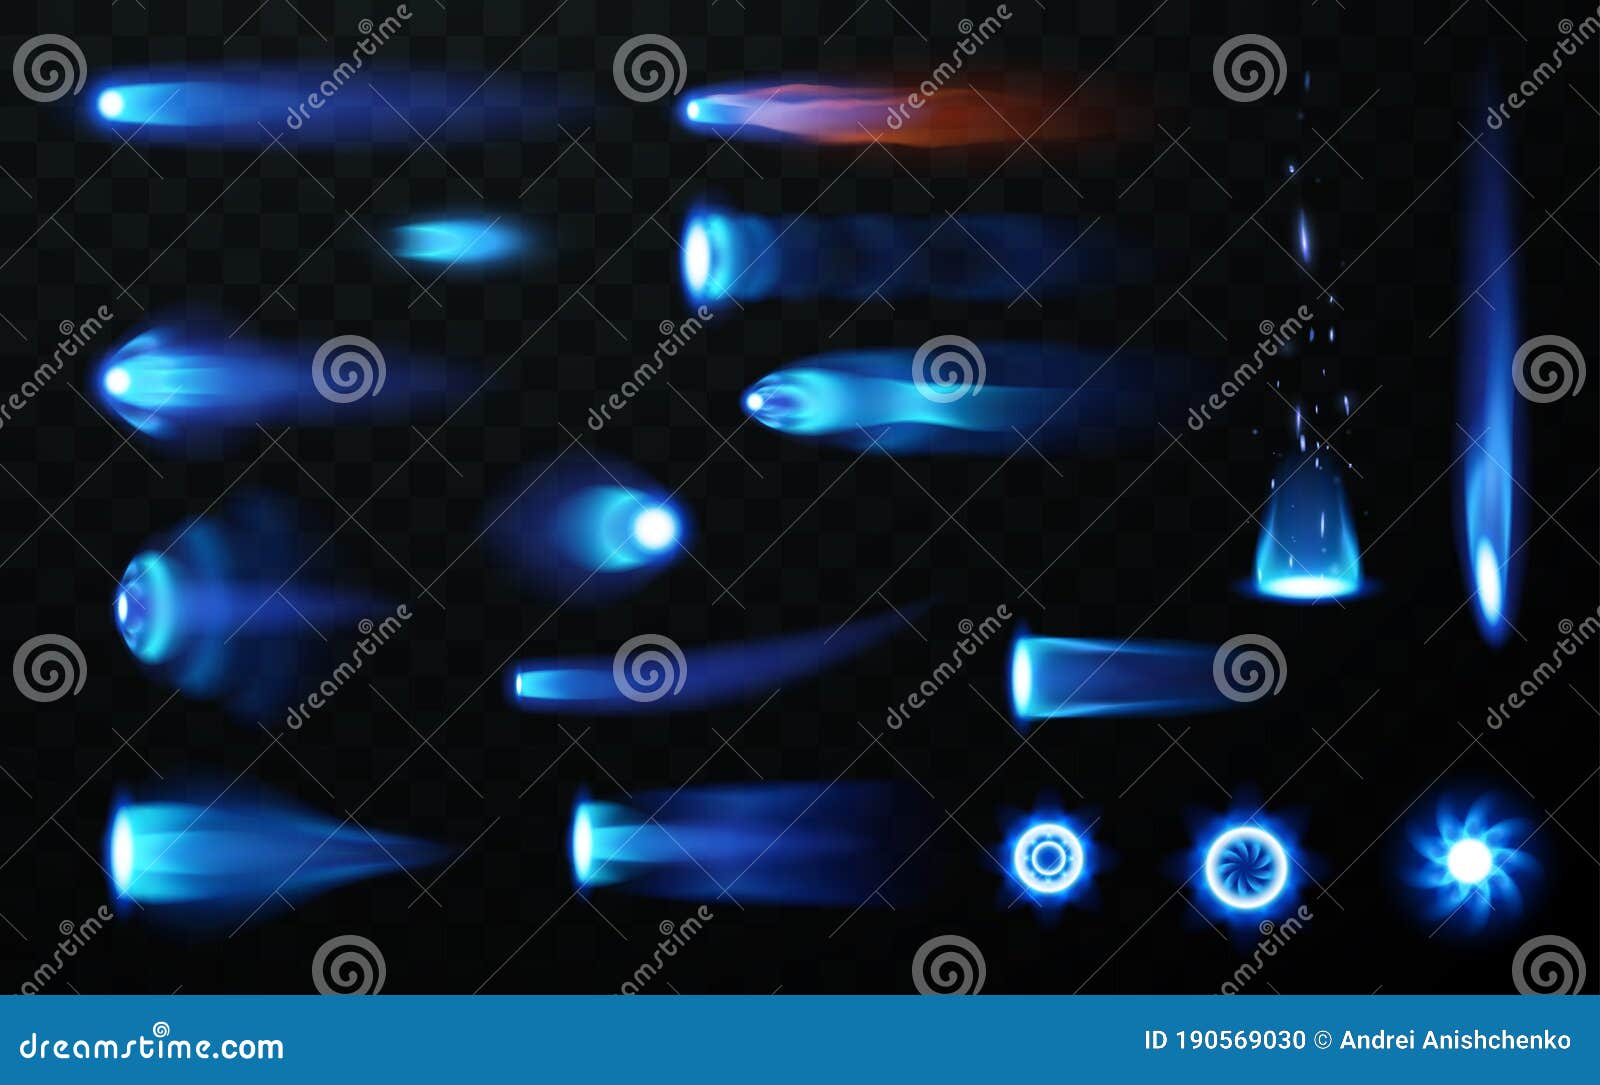 jet flame set on transparent background